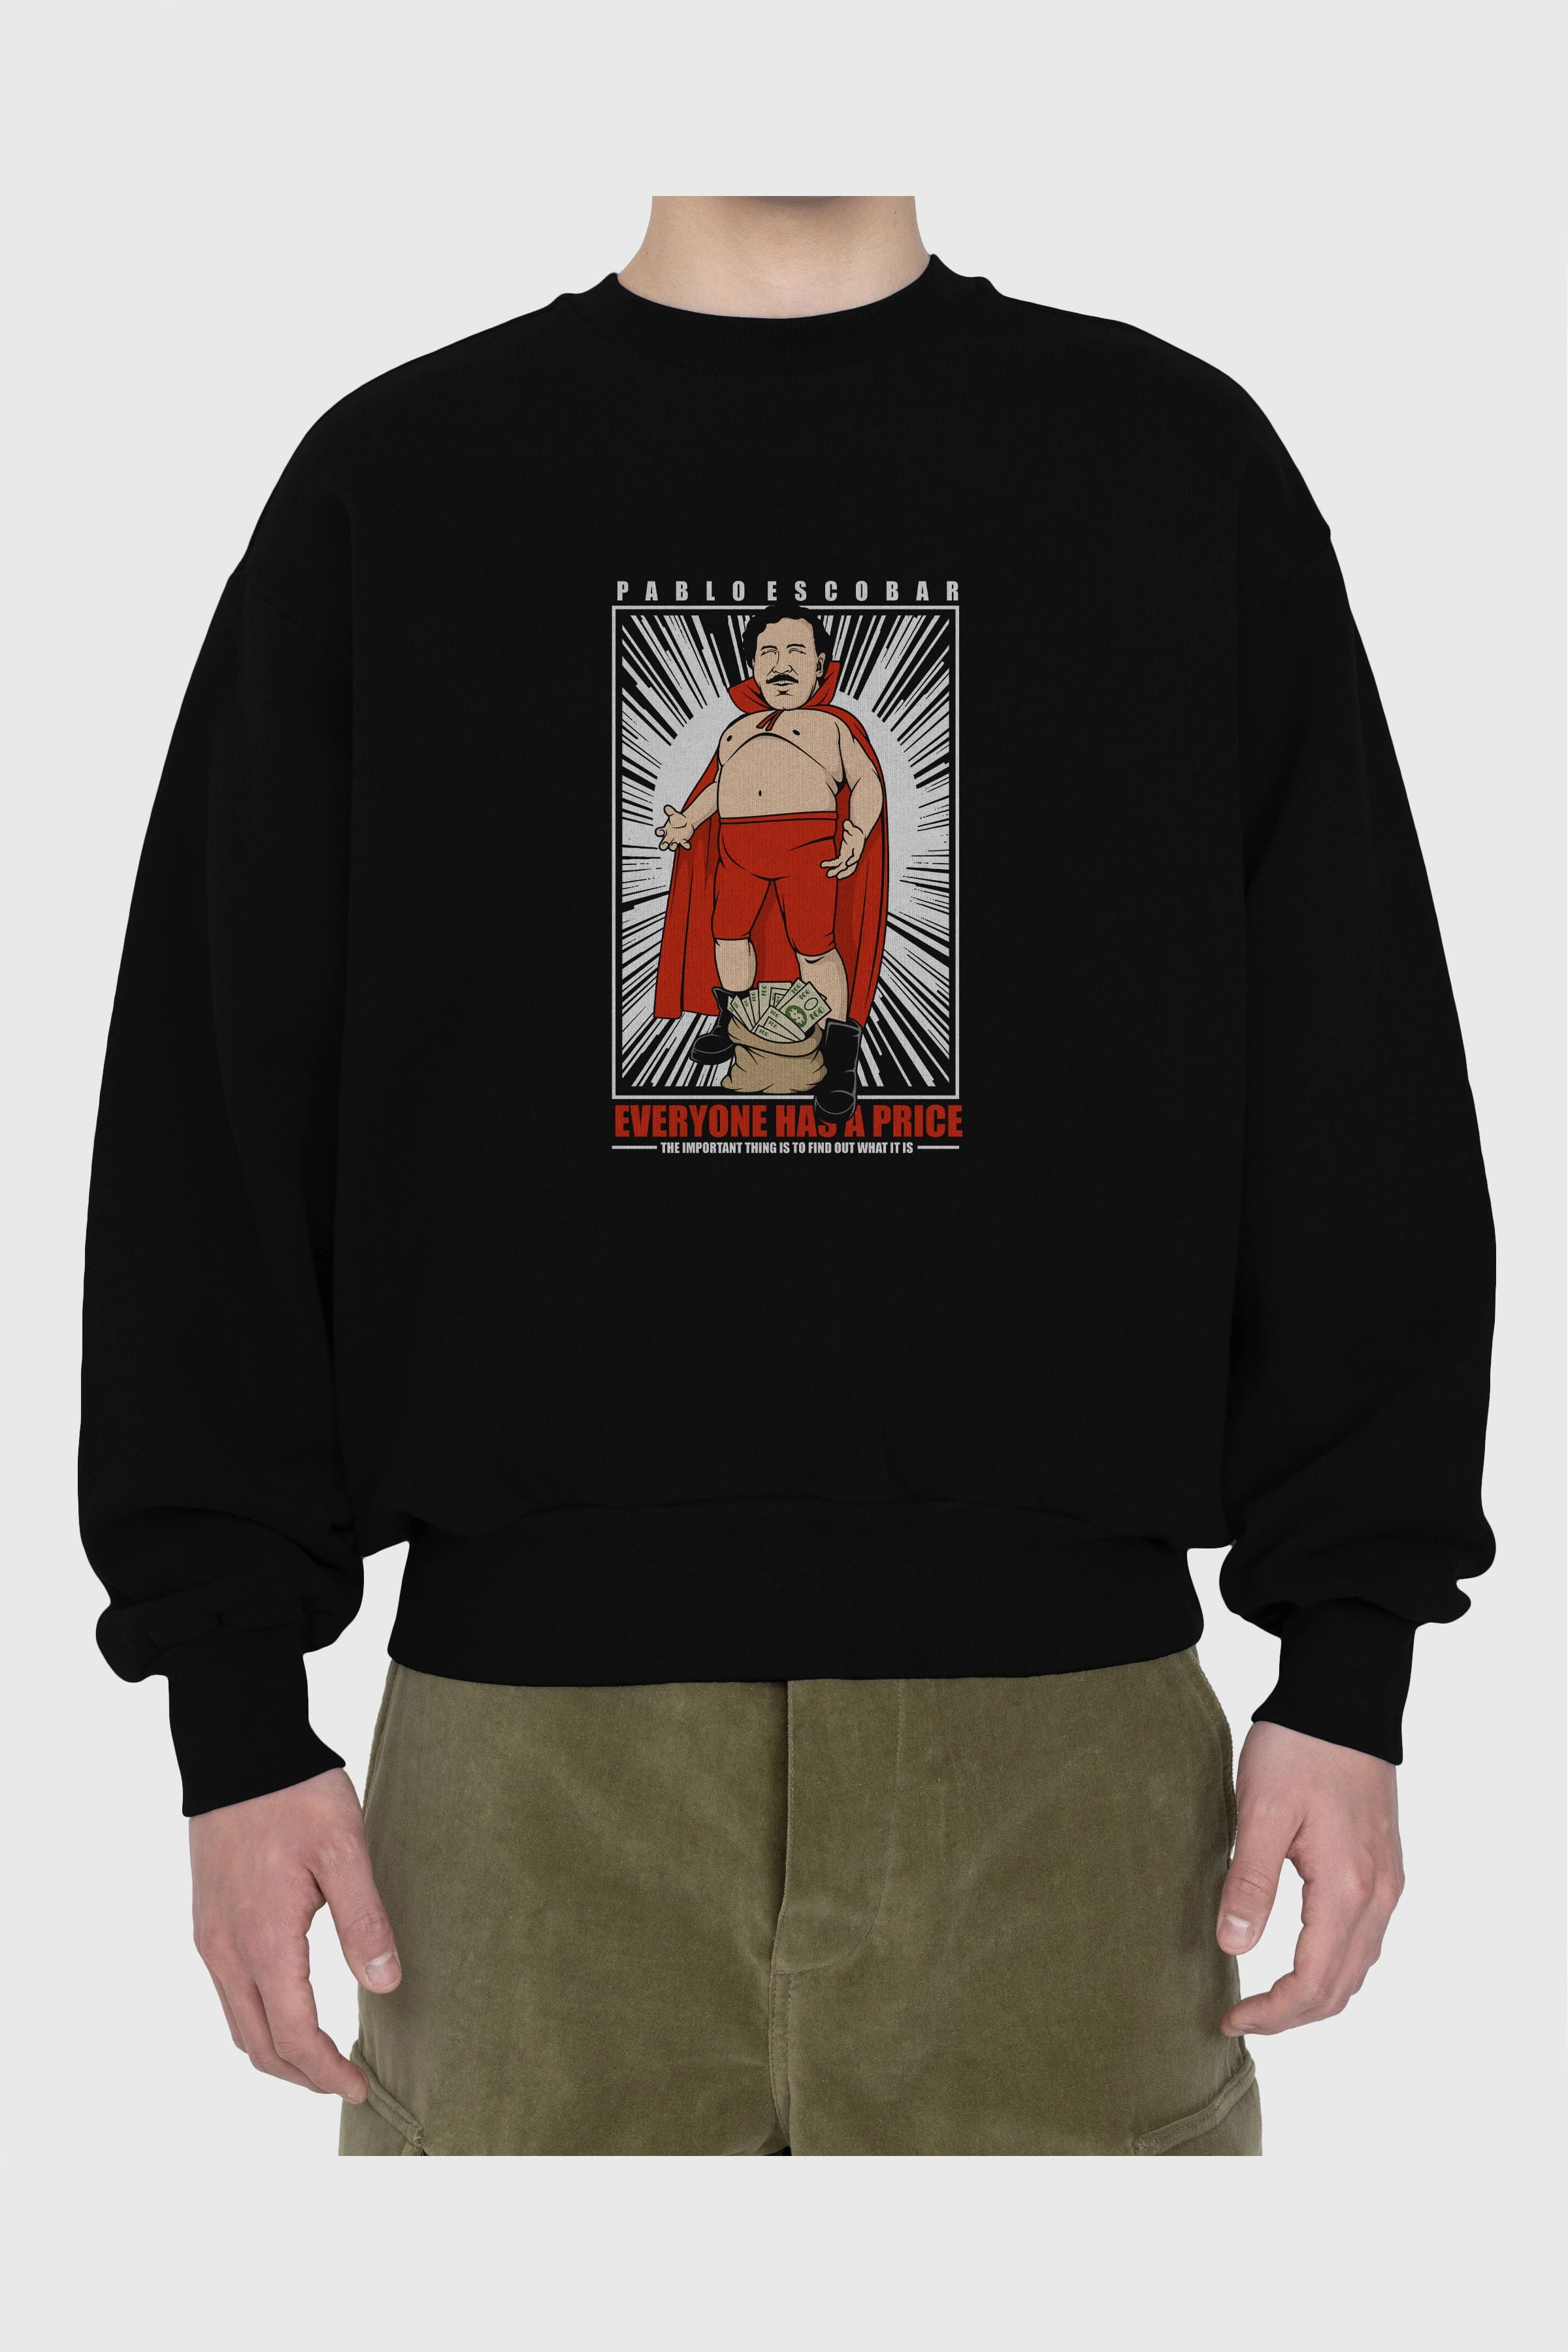 Pablo Escobar Luchador Ön Baskılı Oversize Sweatshirt Erkek Kadın Unisex